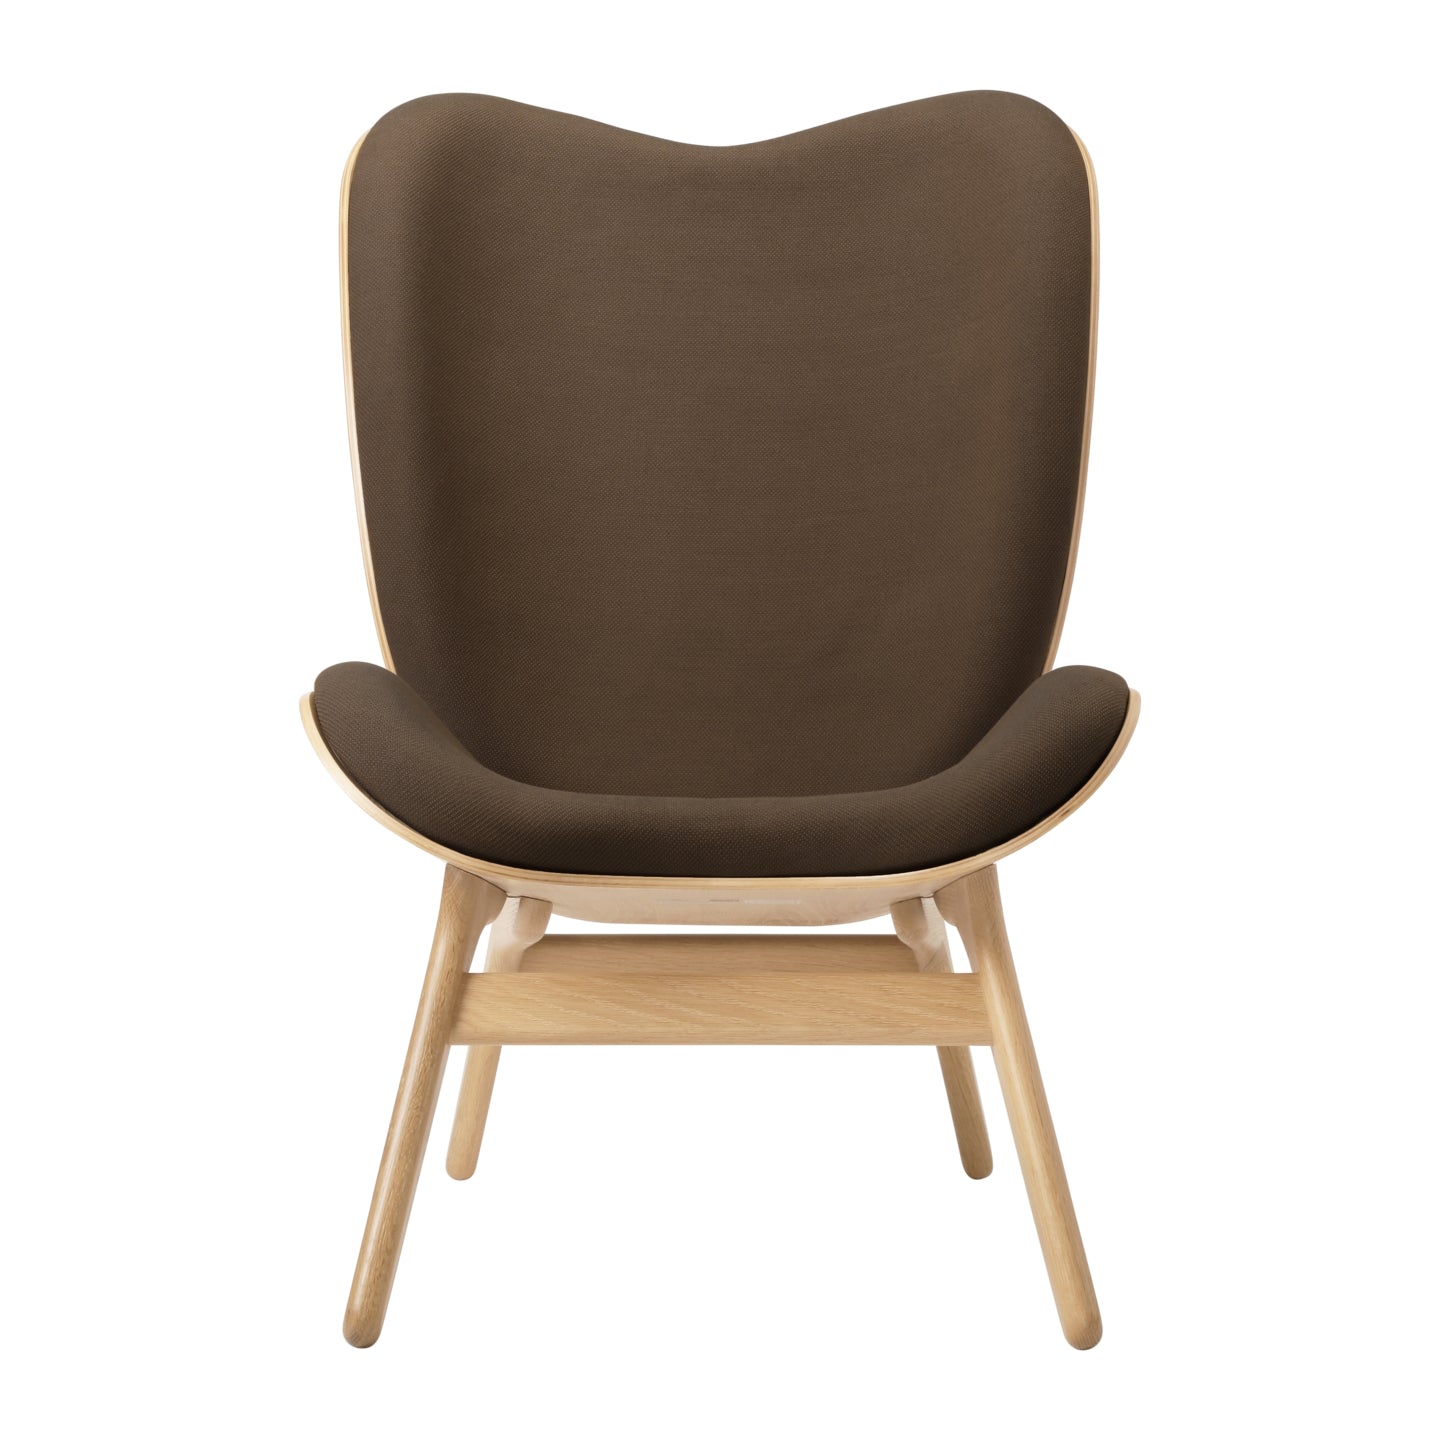 A Conversation Piece Lounge Chair Tall Oak